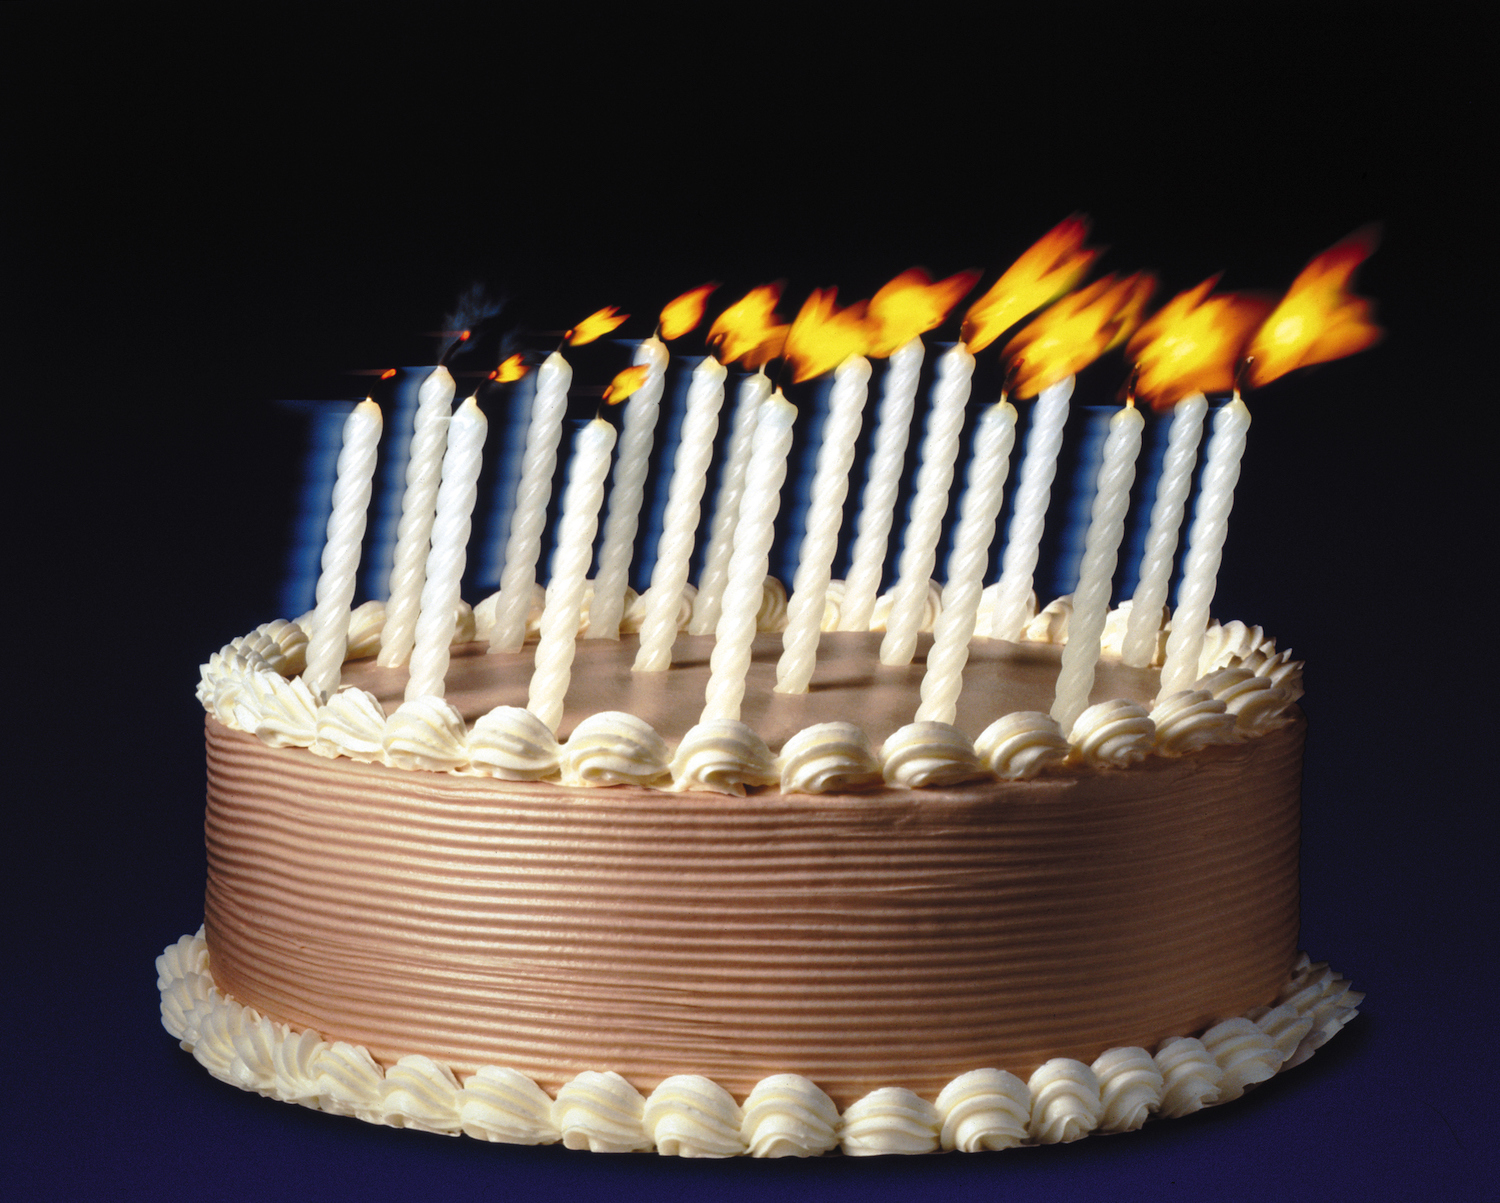 Замороженный торт, на котором задувают свечи, как будто кто-то только что за кадром загадал желание.